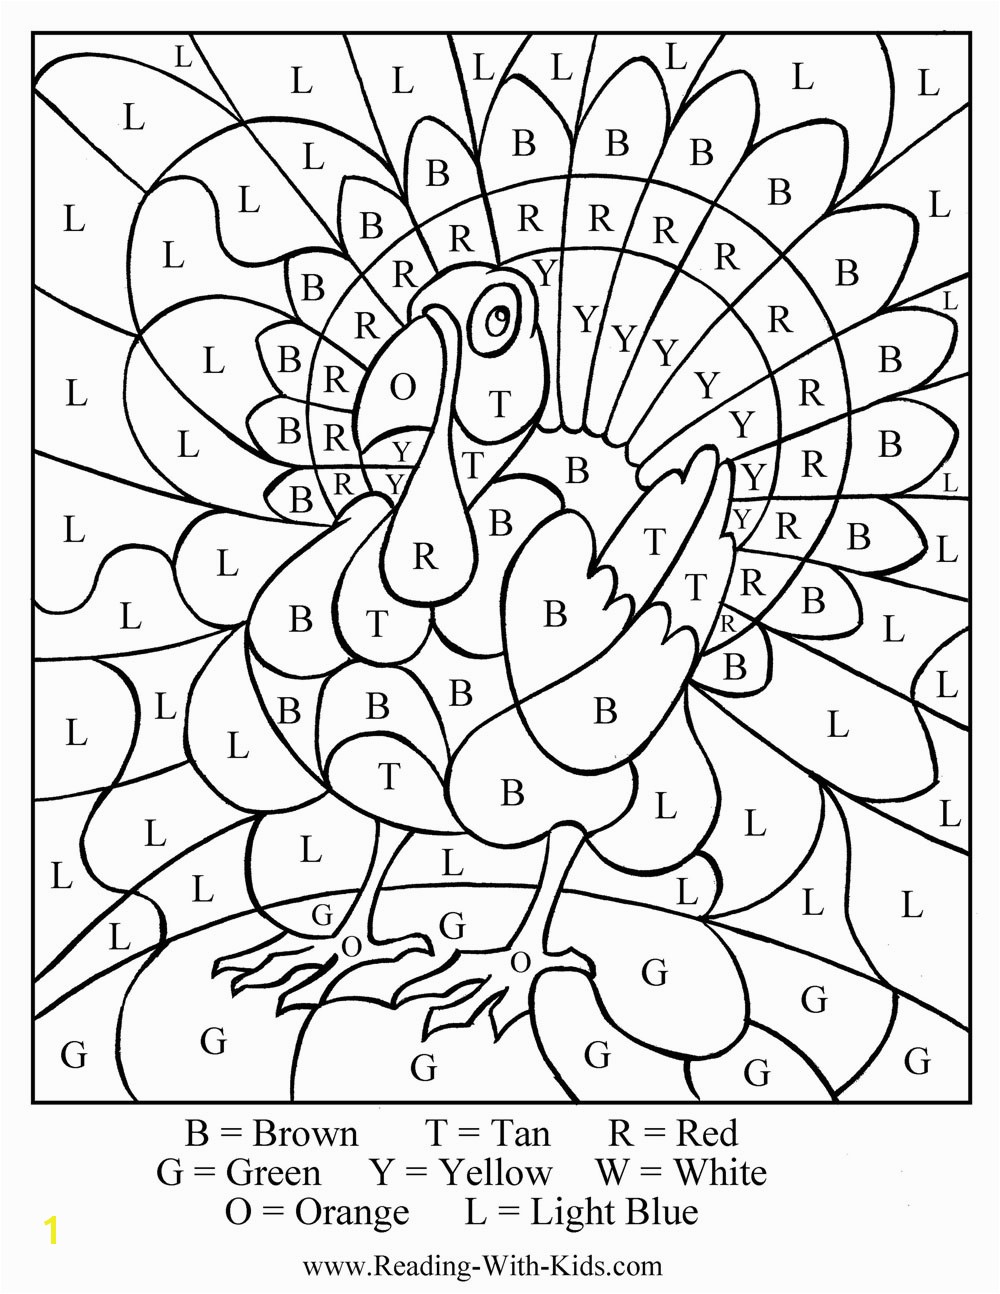 turkey coloring sheet for preschoolers turkey cbn